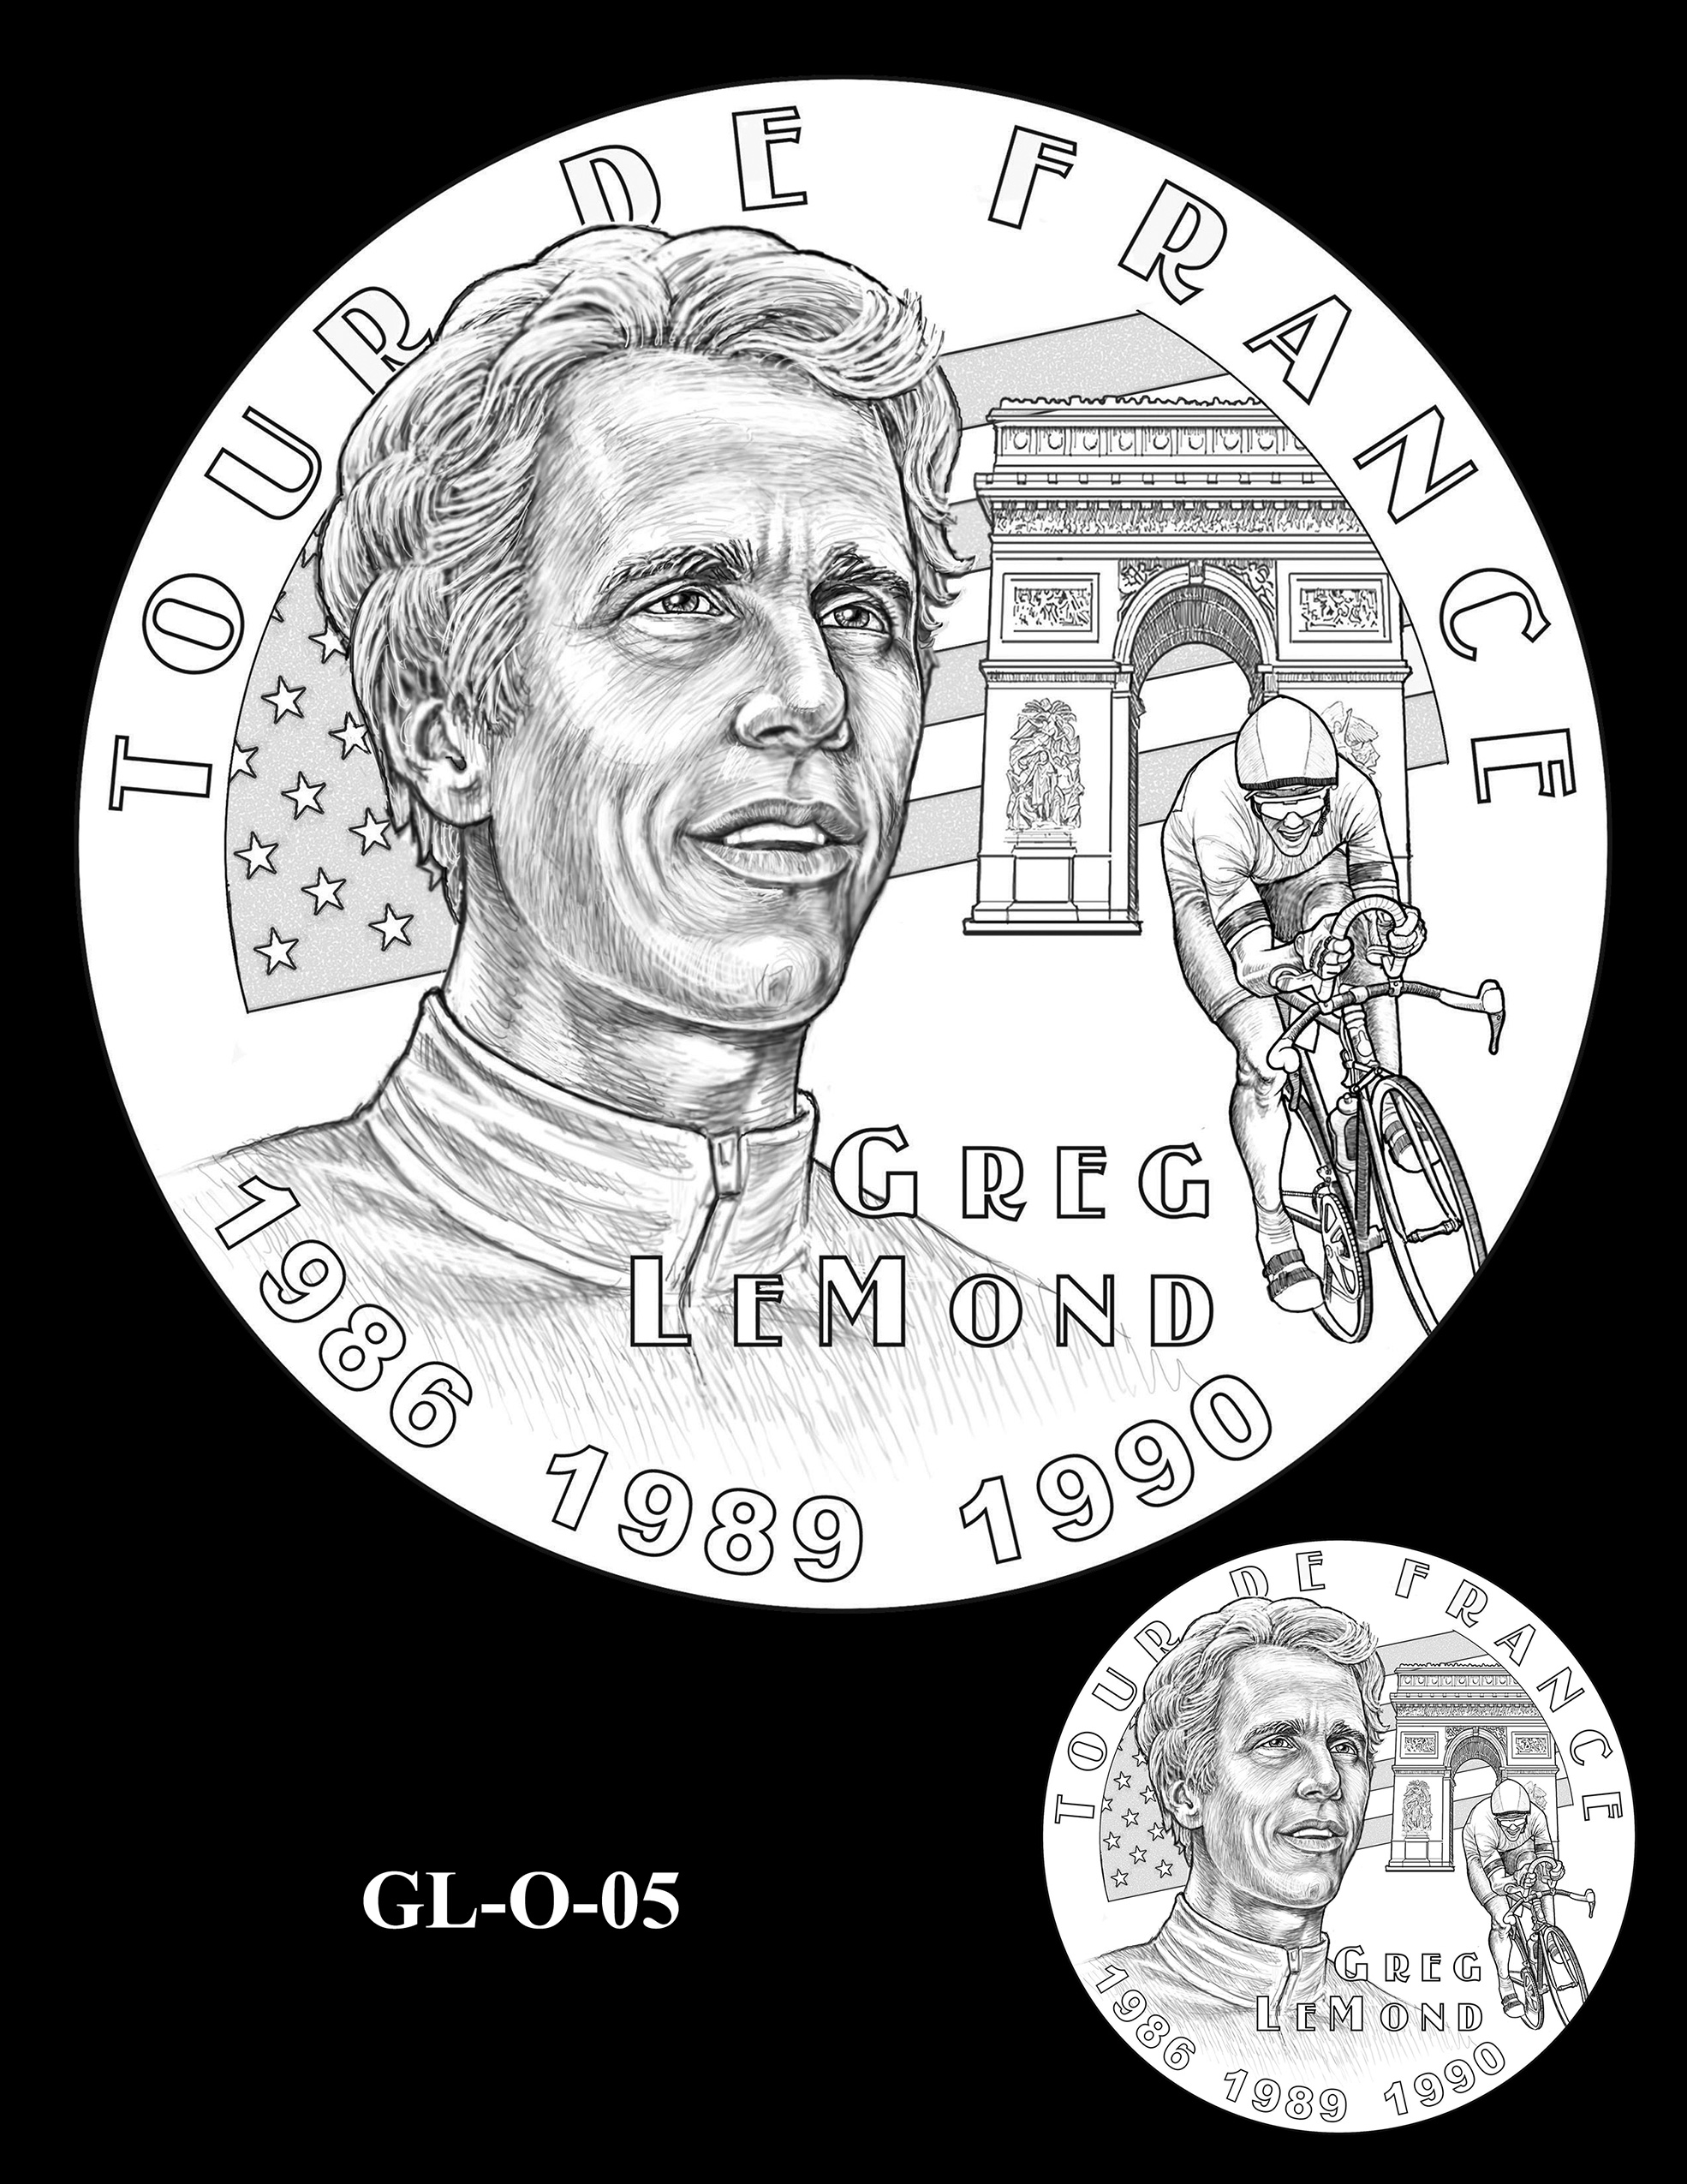 GL-O-05 -- Greg LeMond Congressional Gold Medal